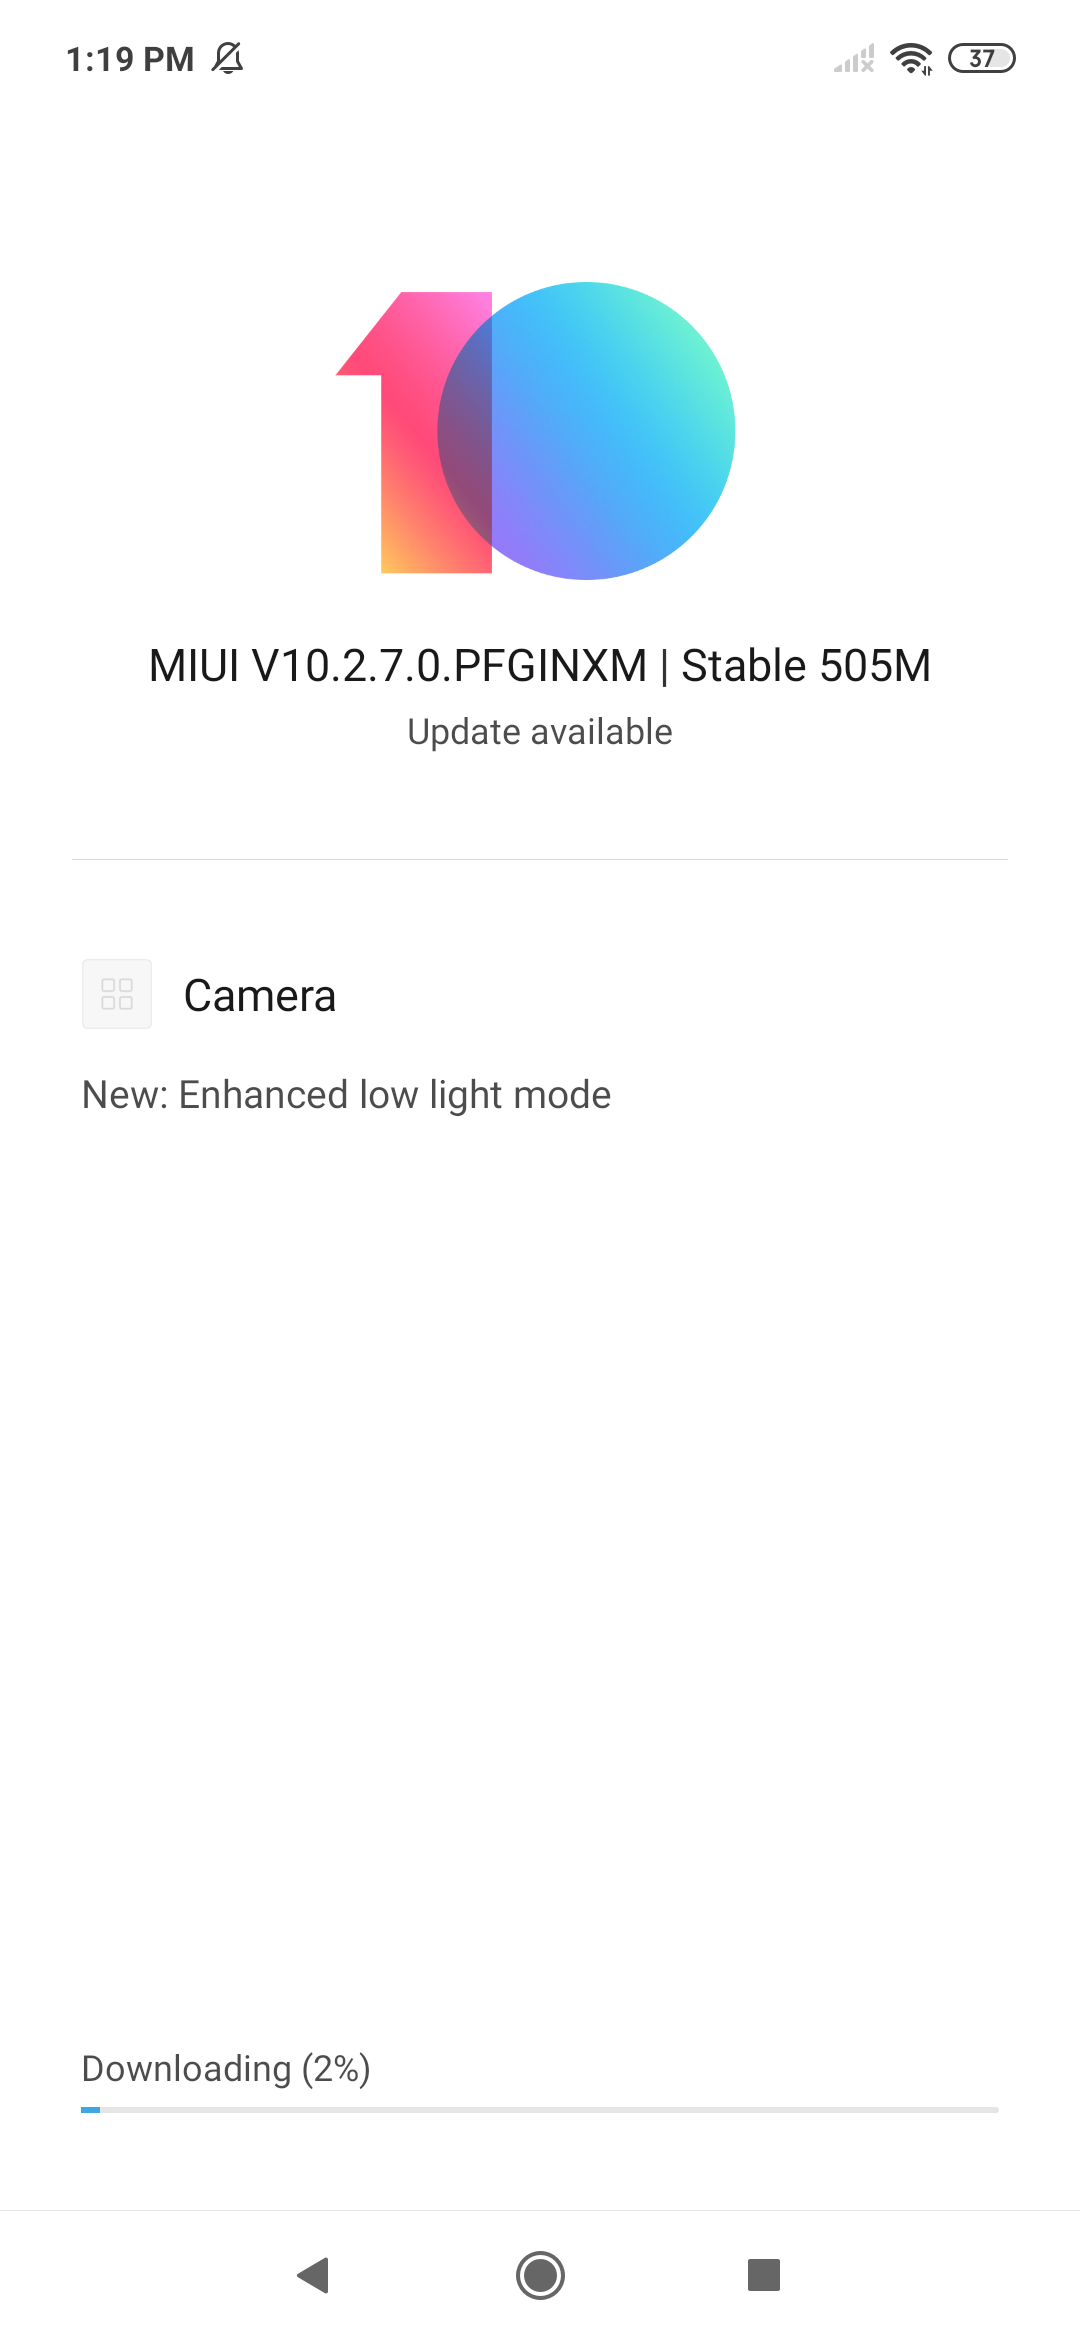 Redmi Note 7 स्मार्टफोन के कैमरे को लेकर अपडेट जारी किया